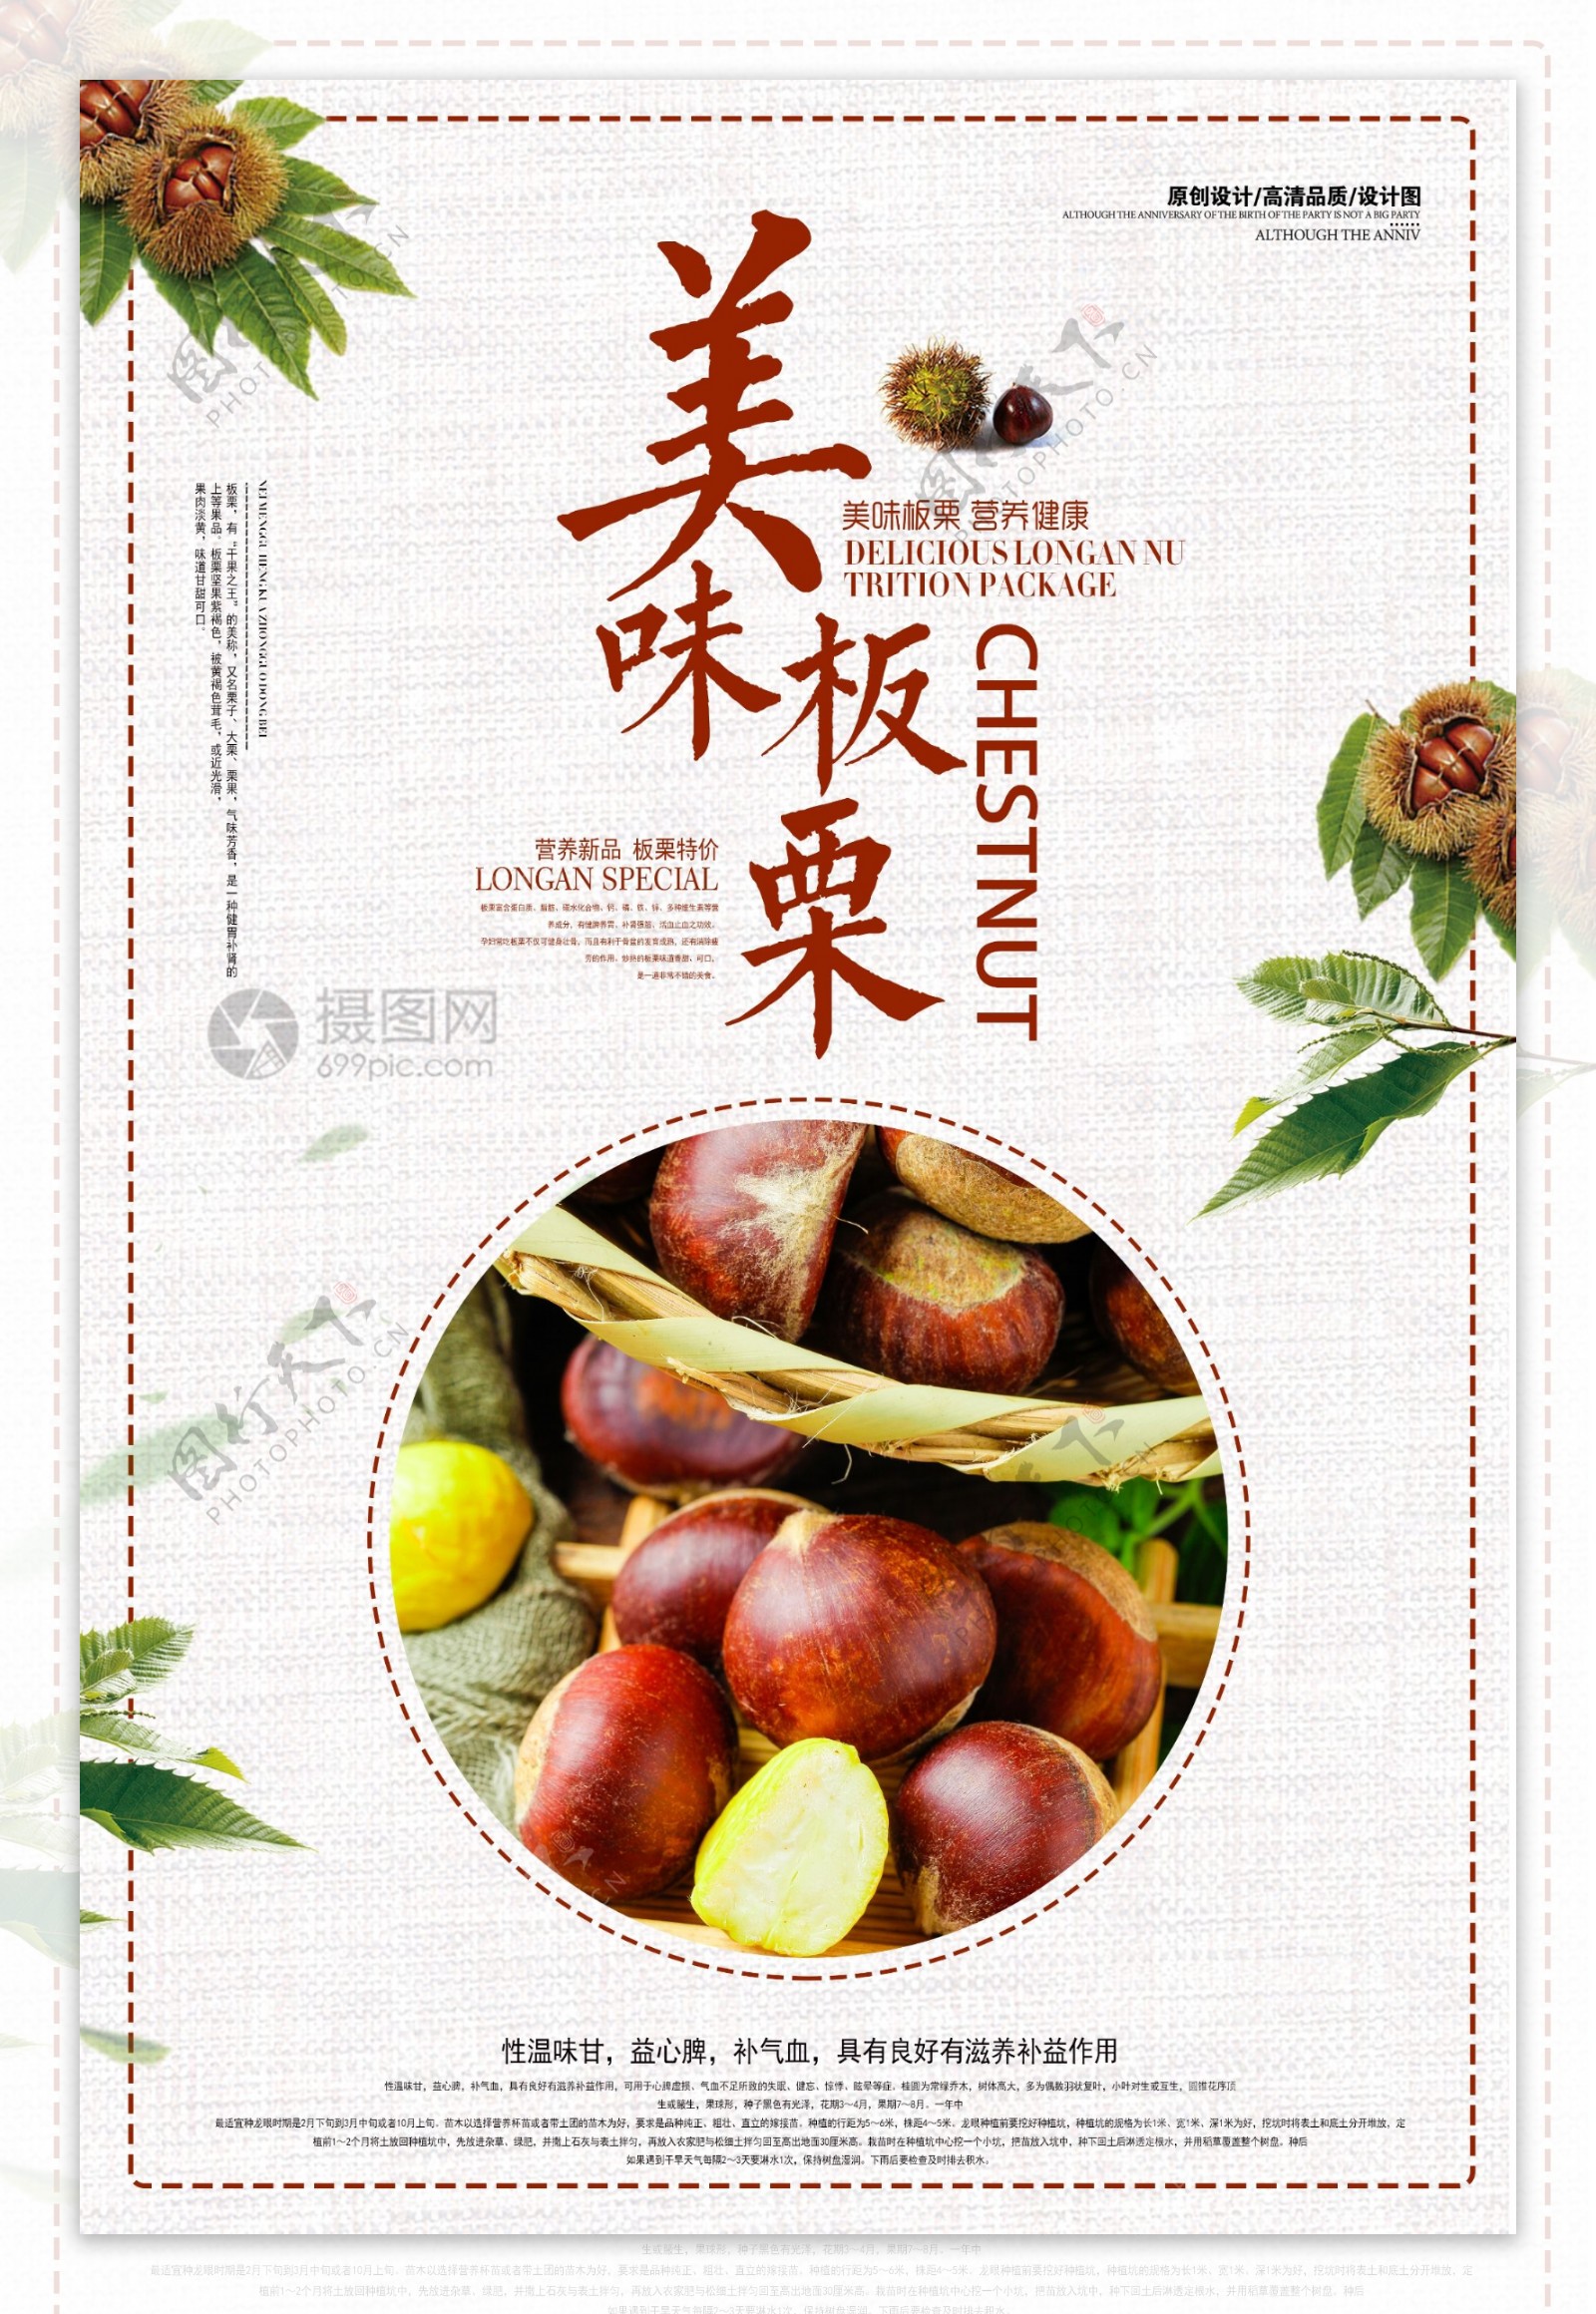 中国风板栗美食促销海报